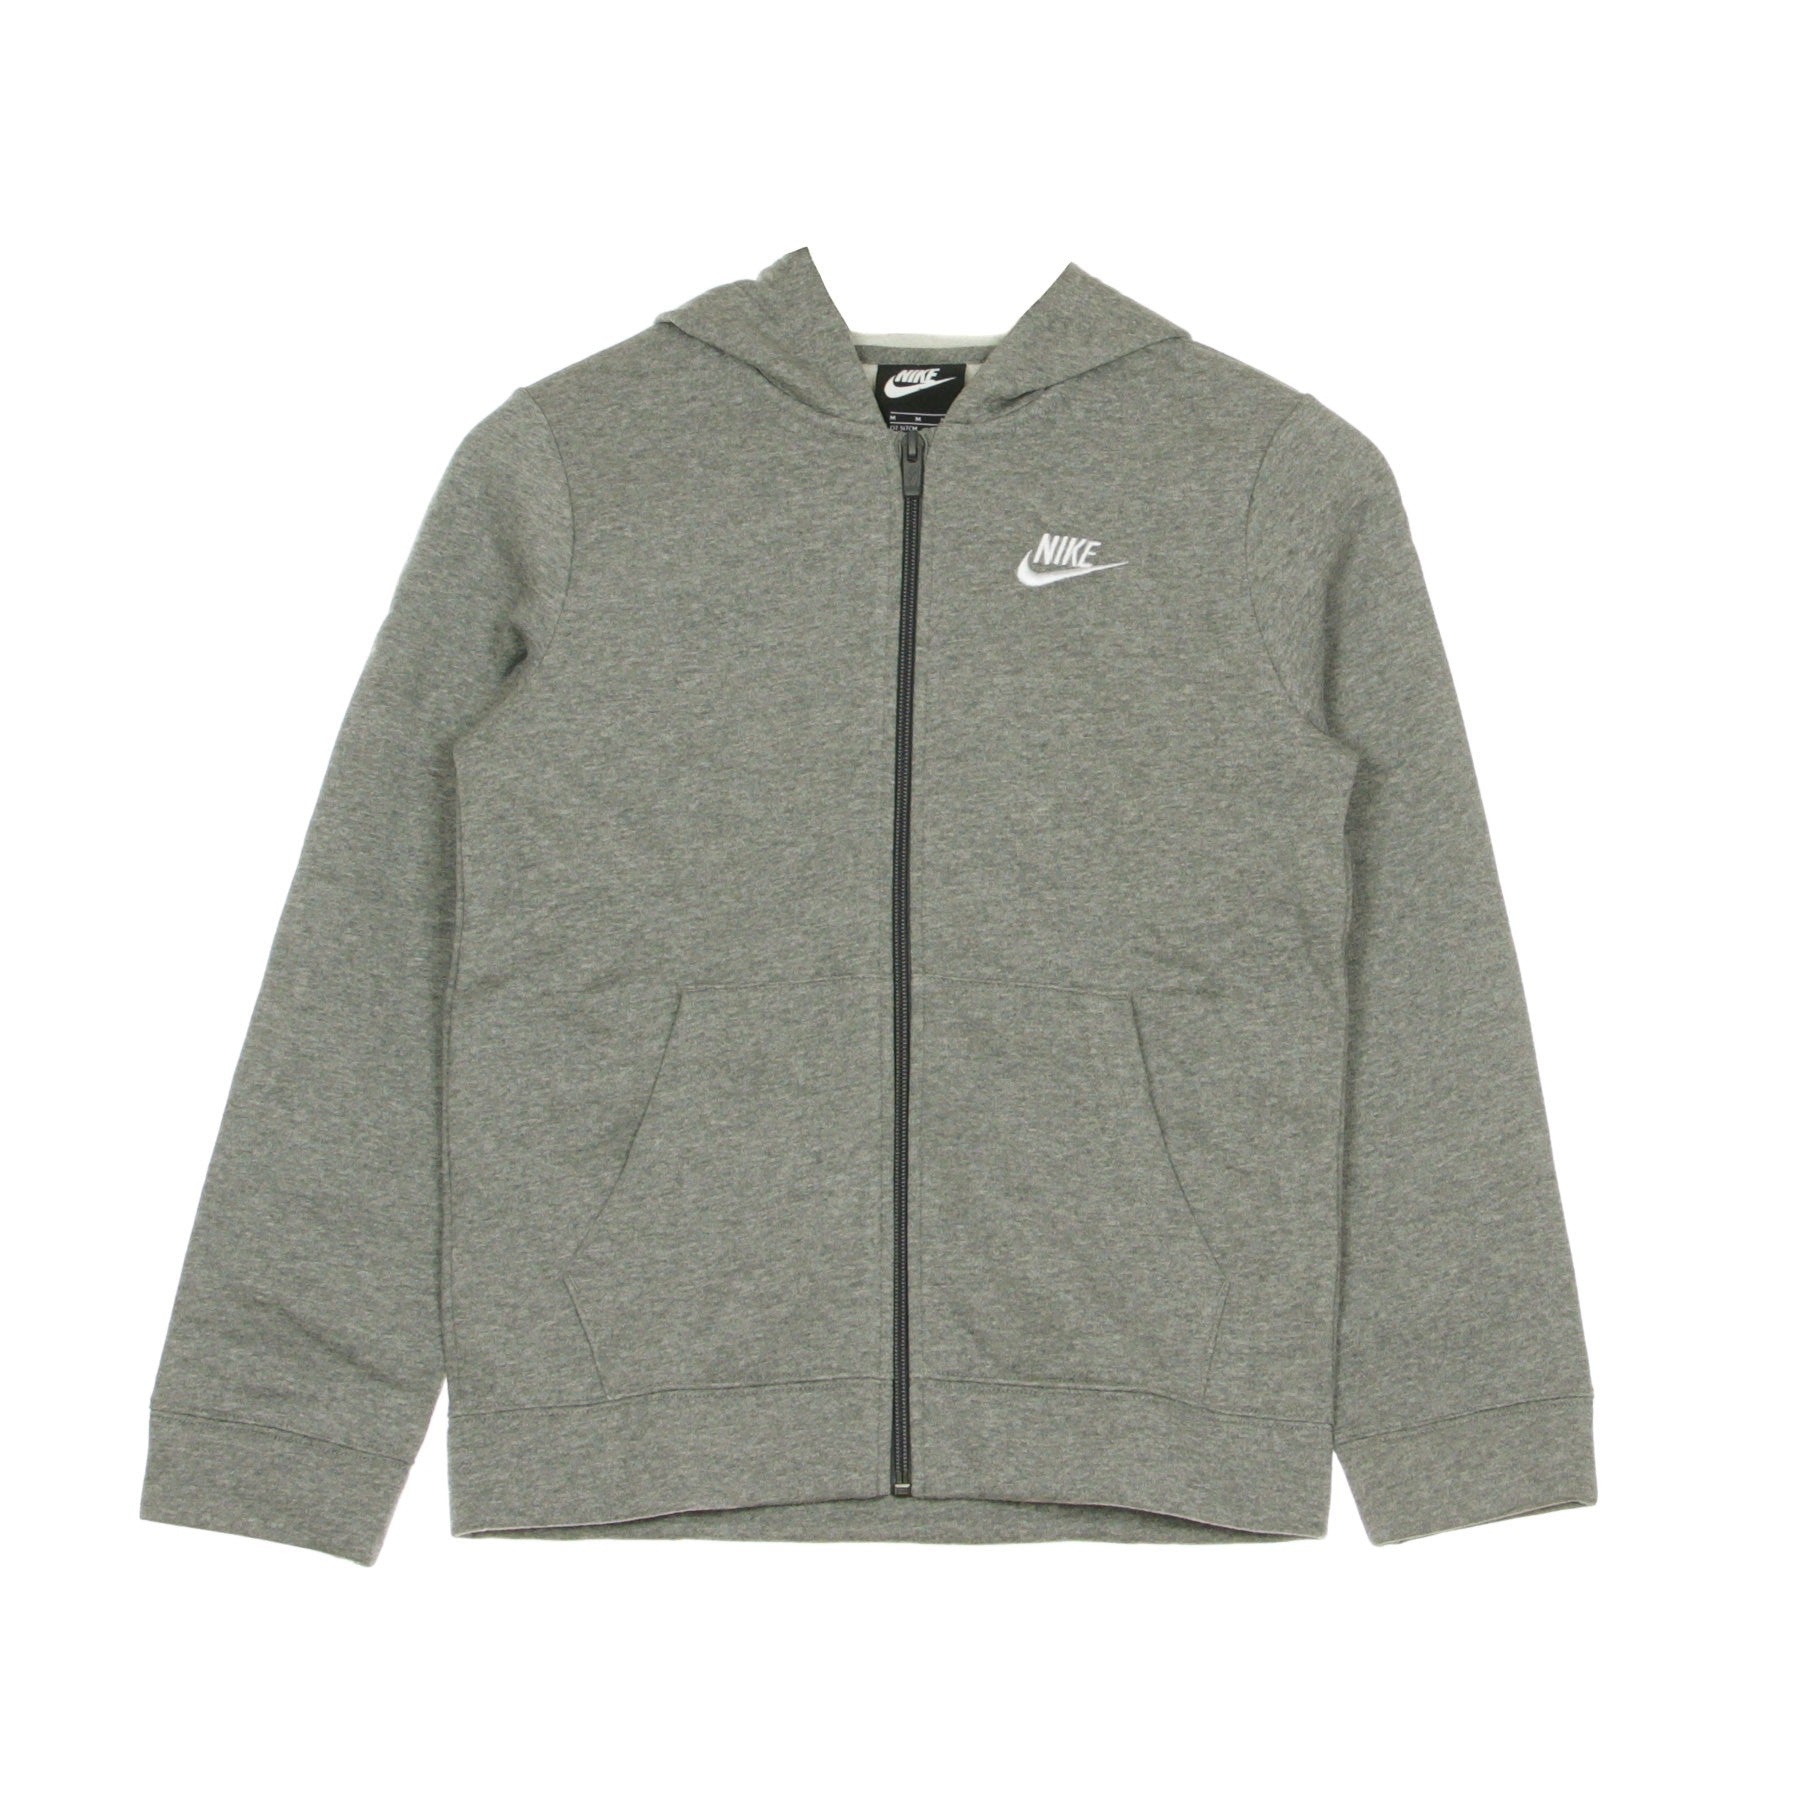 Nike, Completo Tuta Ragazzo Sportswear Core, Carbon Heather/dark Grey/white